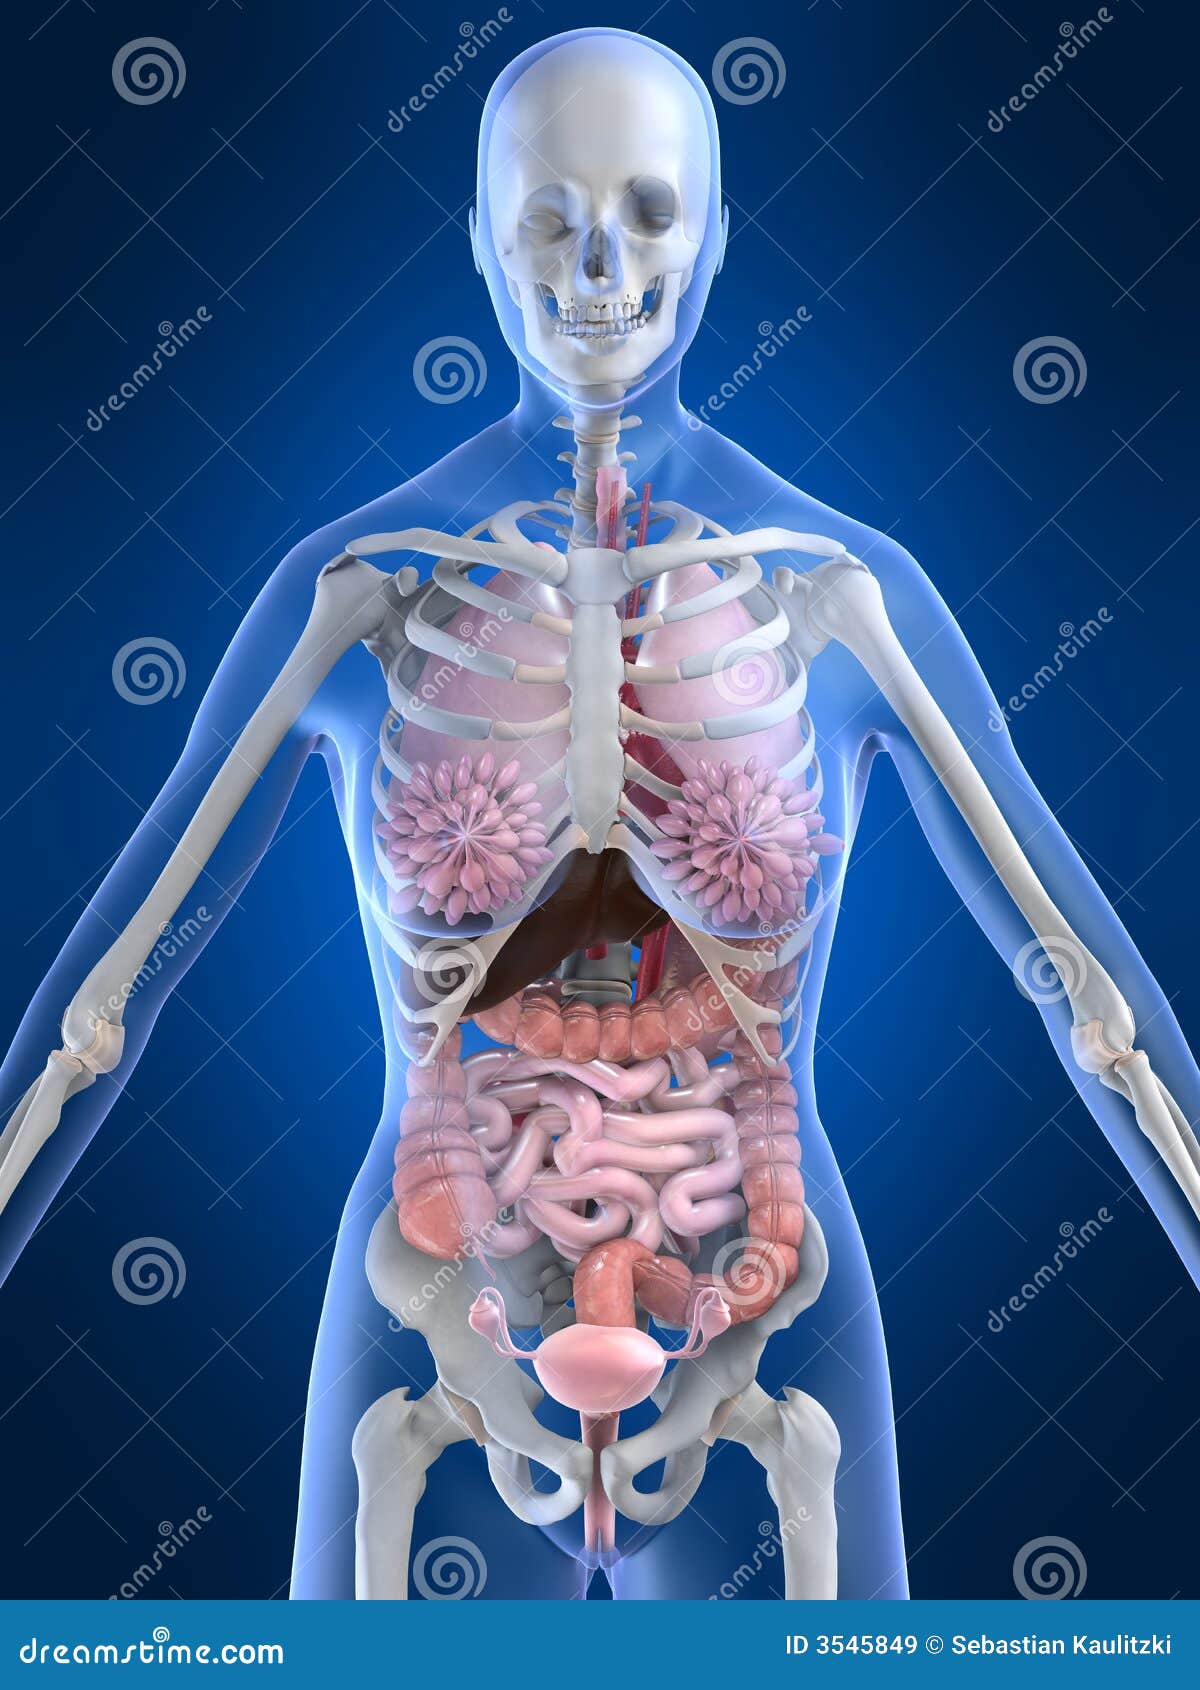 四、腹部正常CT解剖-CT读片指南-医学